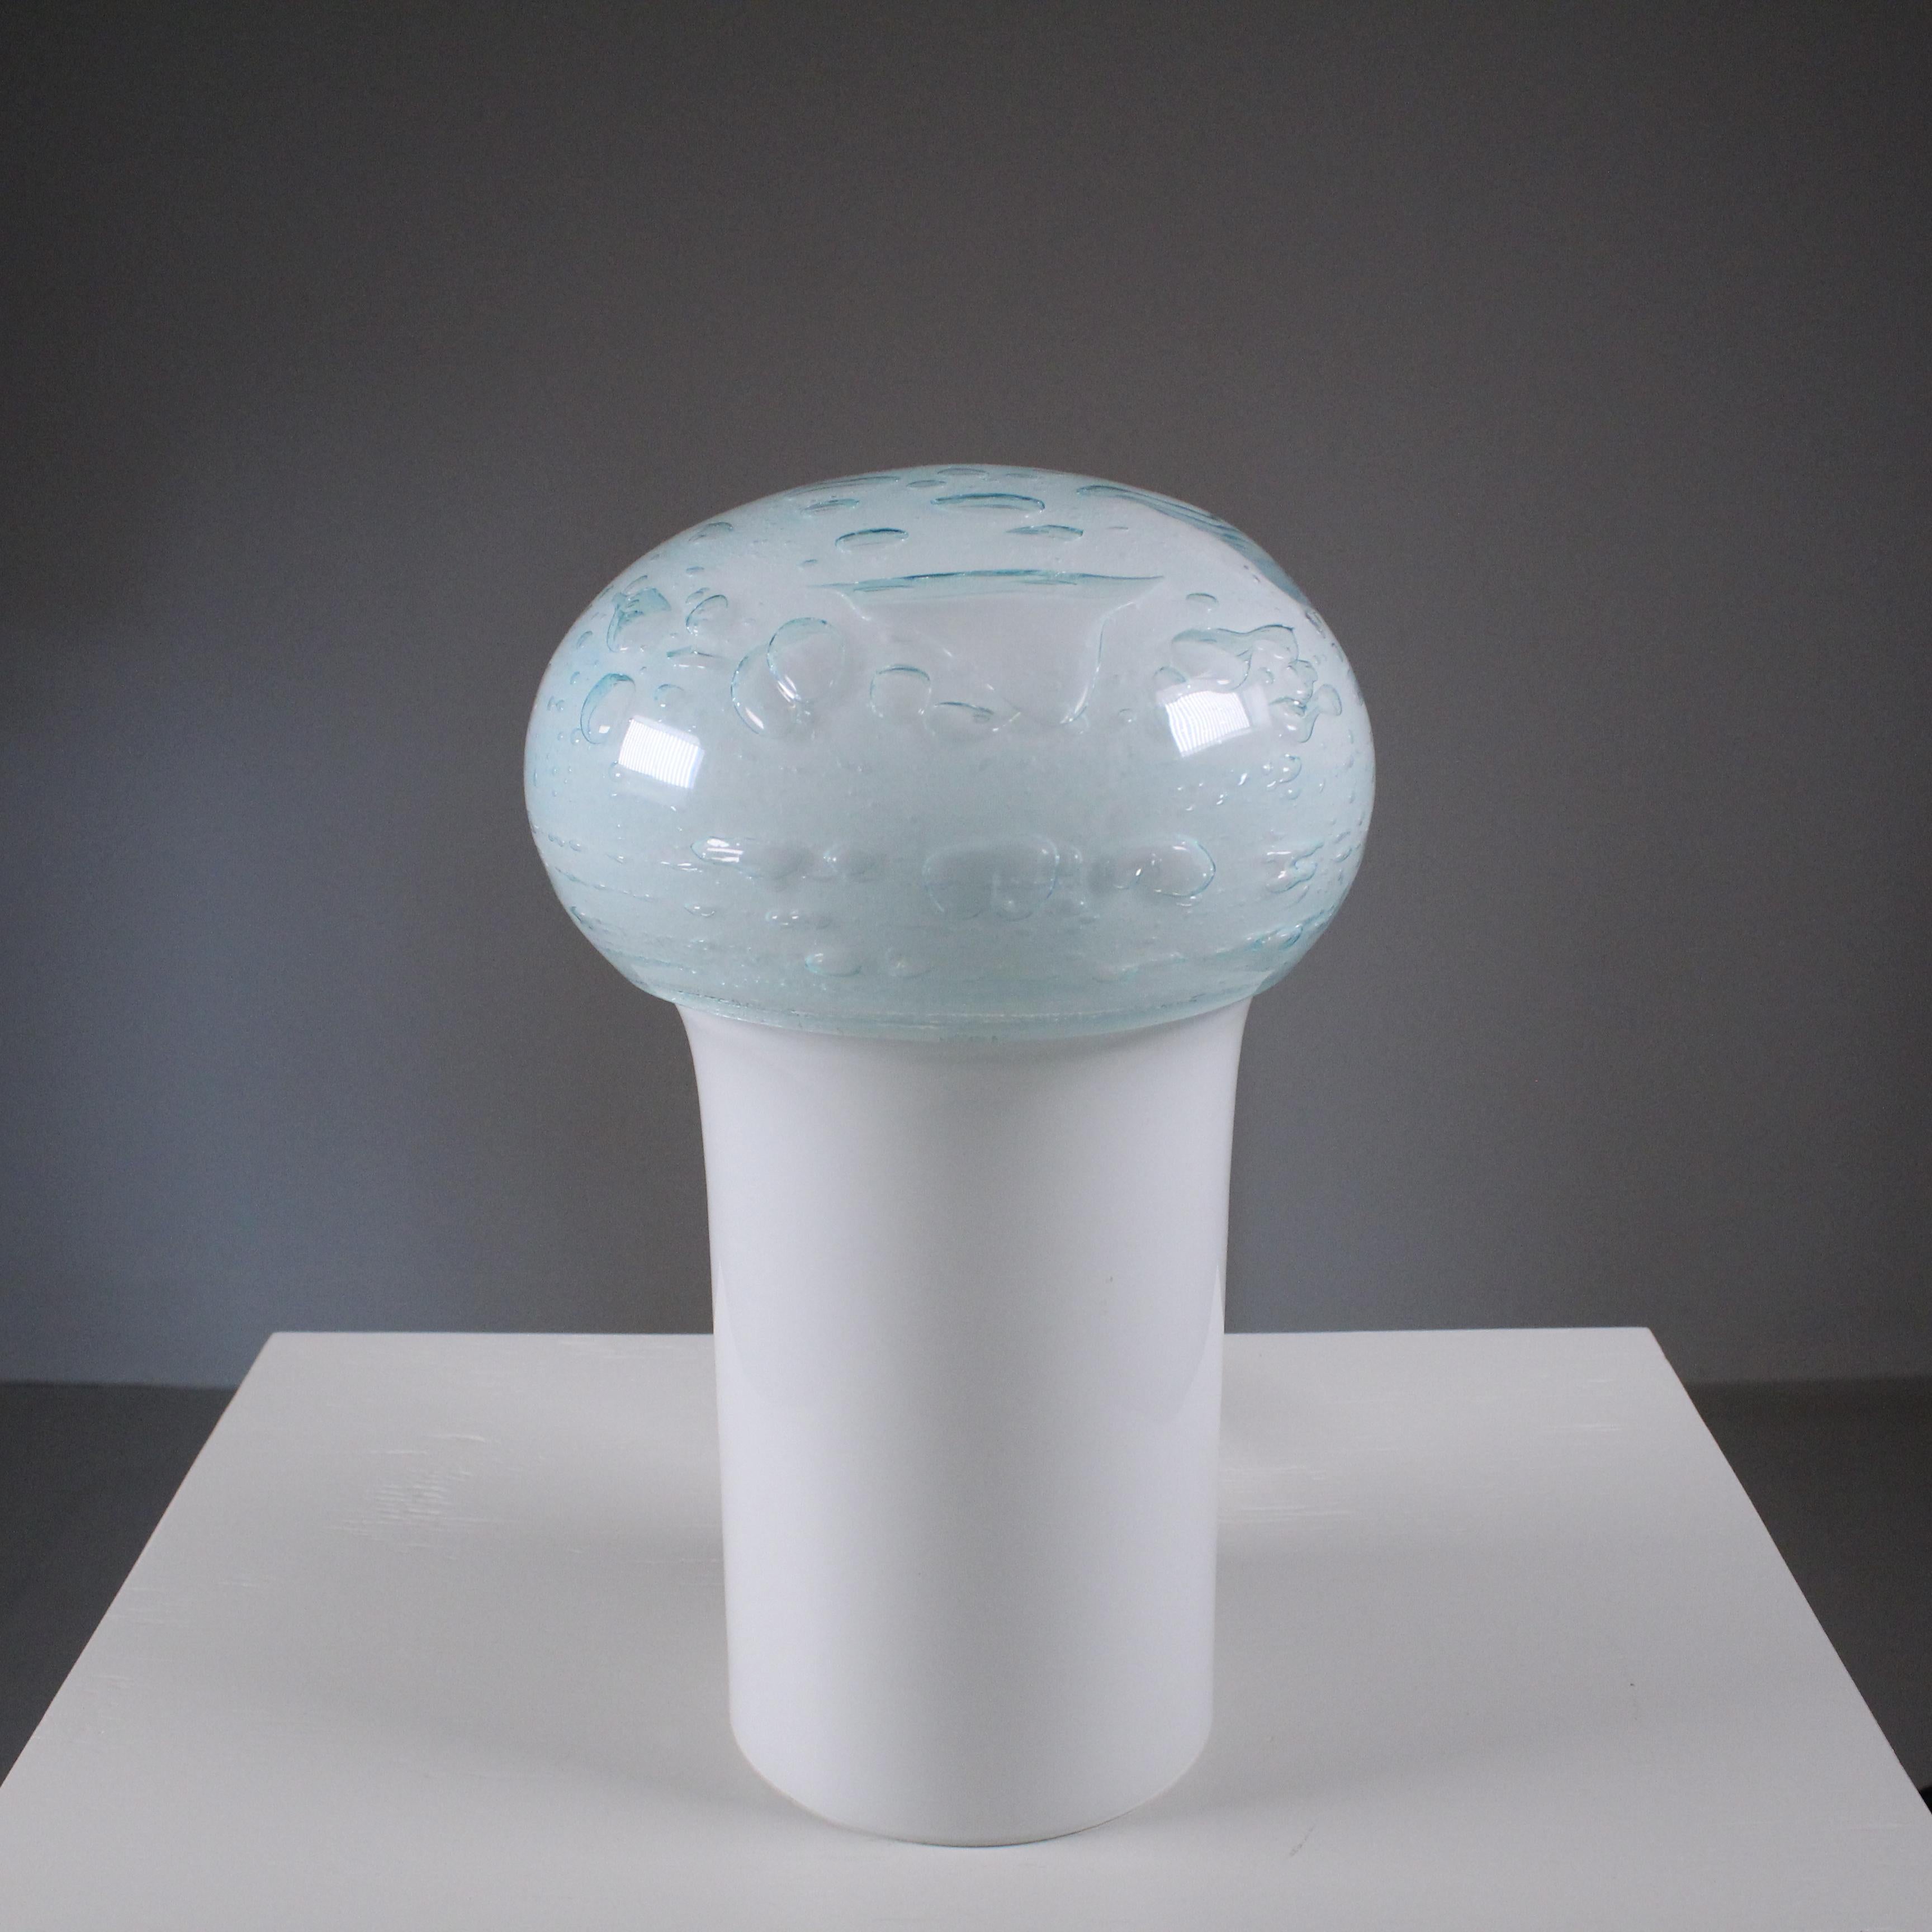 La lampe de table en forme de champignon de Vistosi, fabriquée en verre bullé de Murano, est une œuvre captivante qui allie harmonieusement maîtrise artisanale et design contemporain. Cette pièce d'éclairage exceptionnelle capture l'essence de l'art